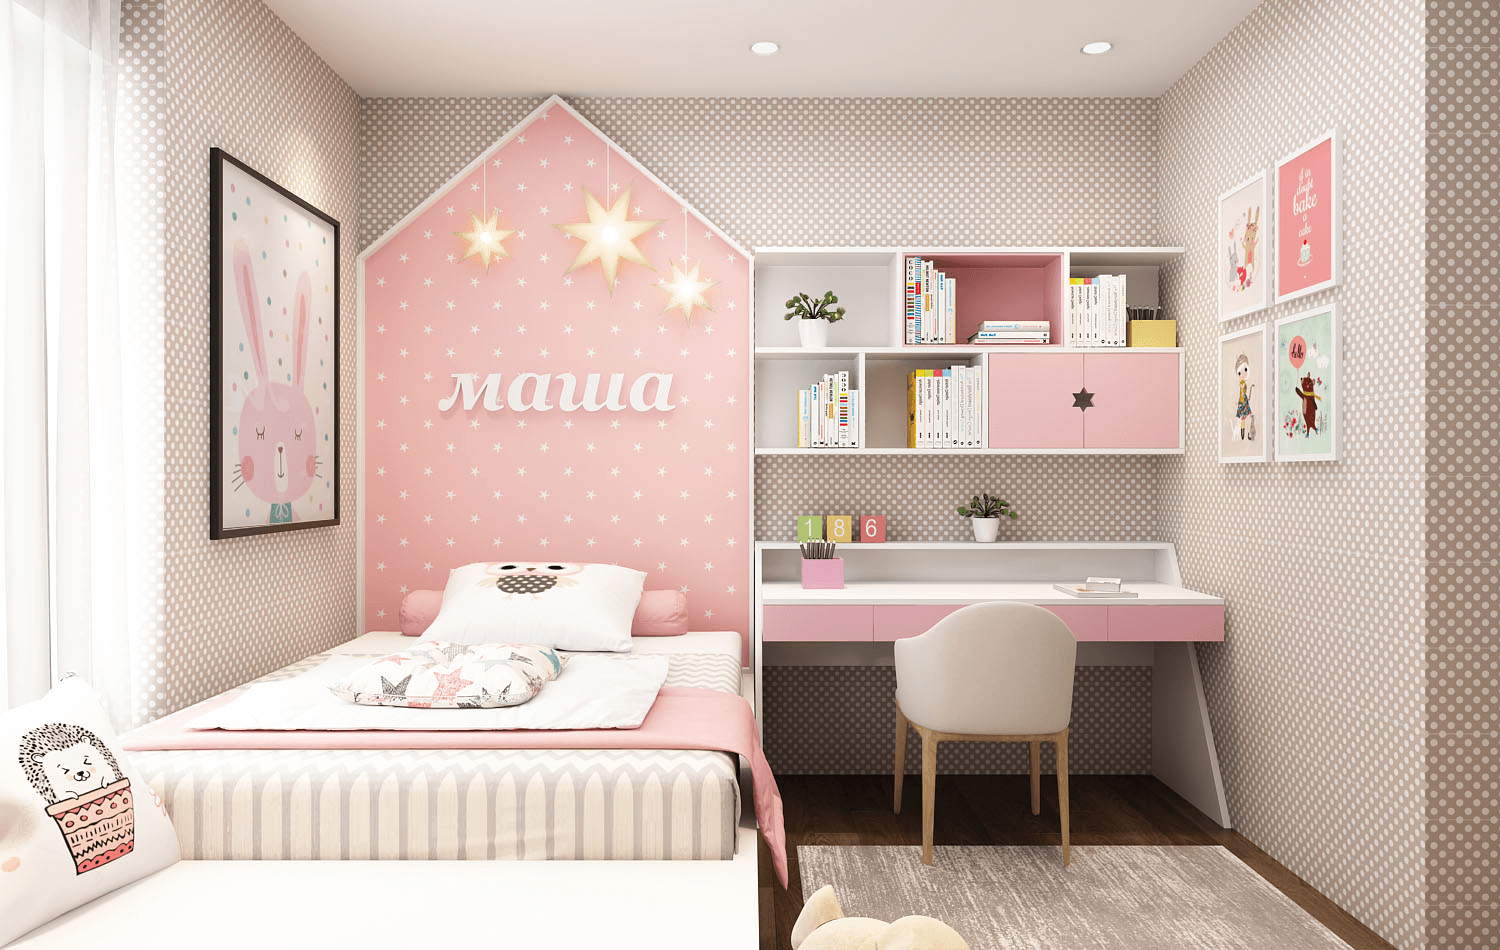 Phòng ngủ tông màu hồng - trắng, thiết kế đầu giường cá tính, cùng giấy dán tường trang trí họa tiết bắt mắt